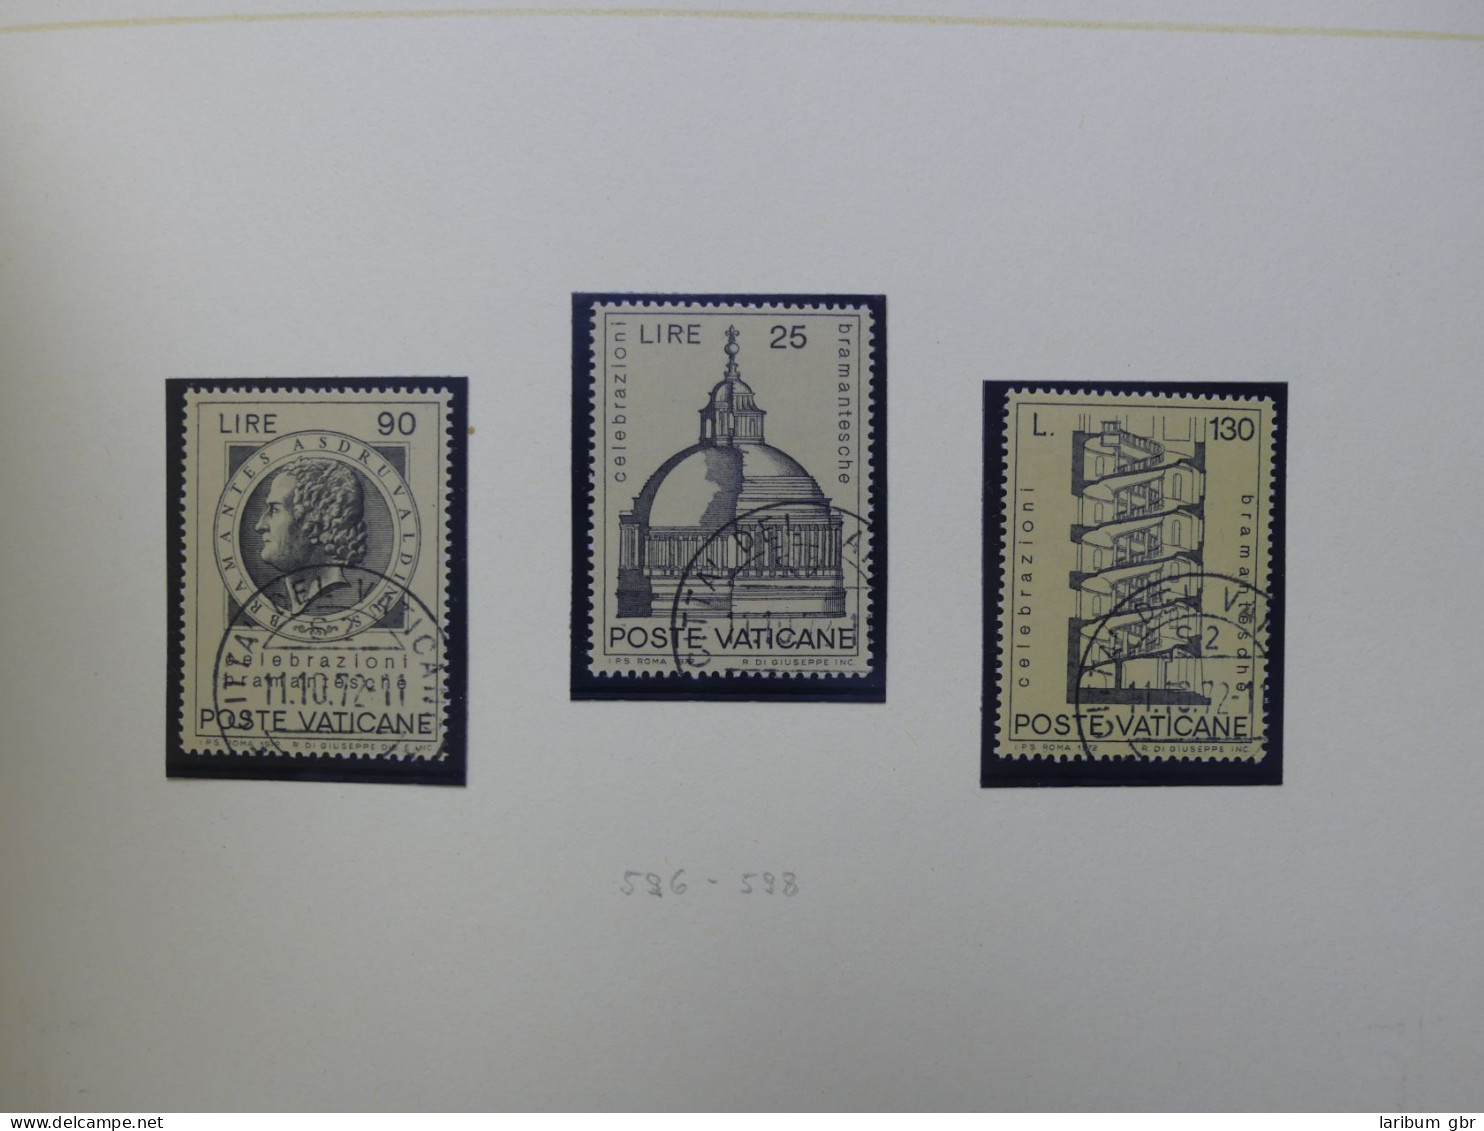 Vatikan 1963-1973 gestempelt besammelt mit Briefen im Binder #LY999